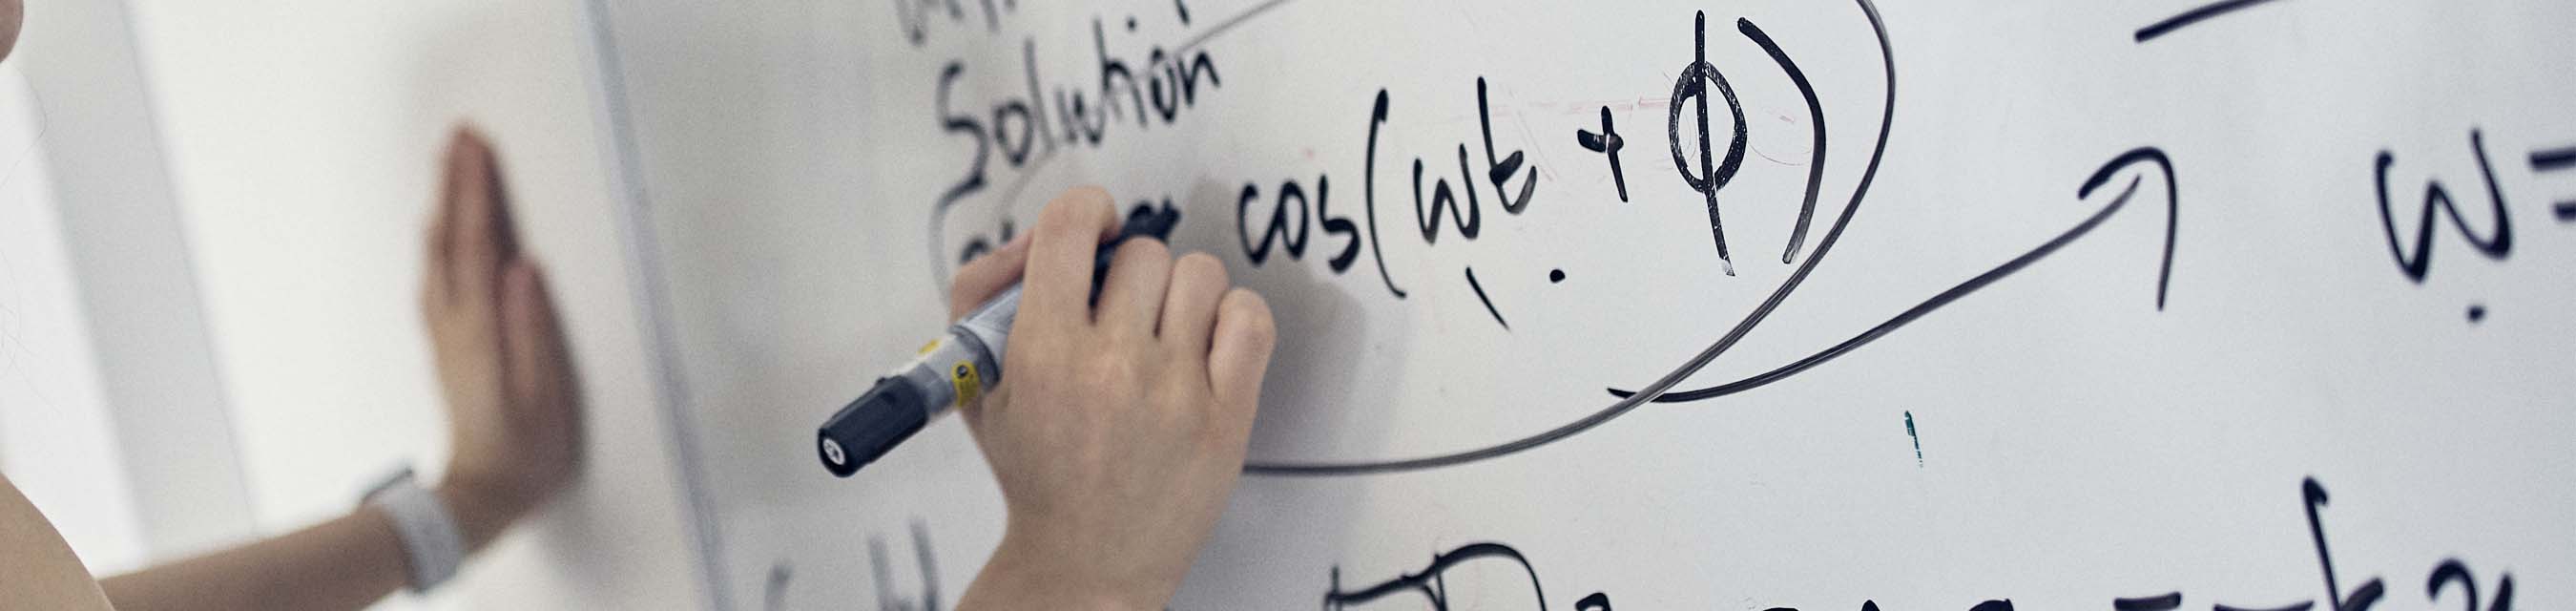 Närbild på en hand som håller på attt skriva en matematisk formel på en vittavla med en svart penna.